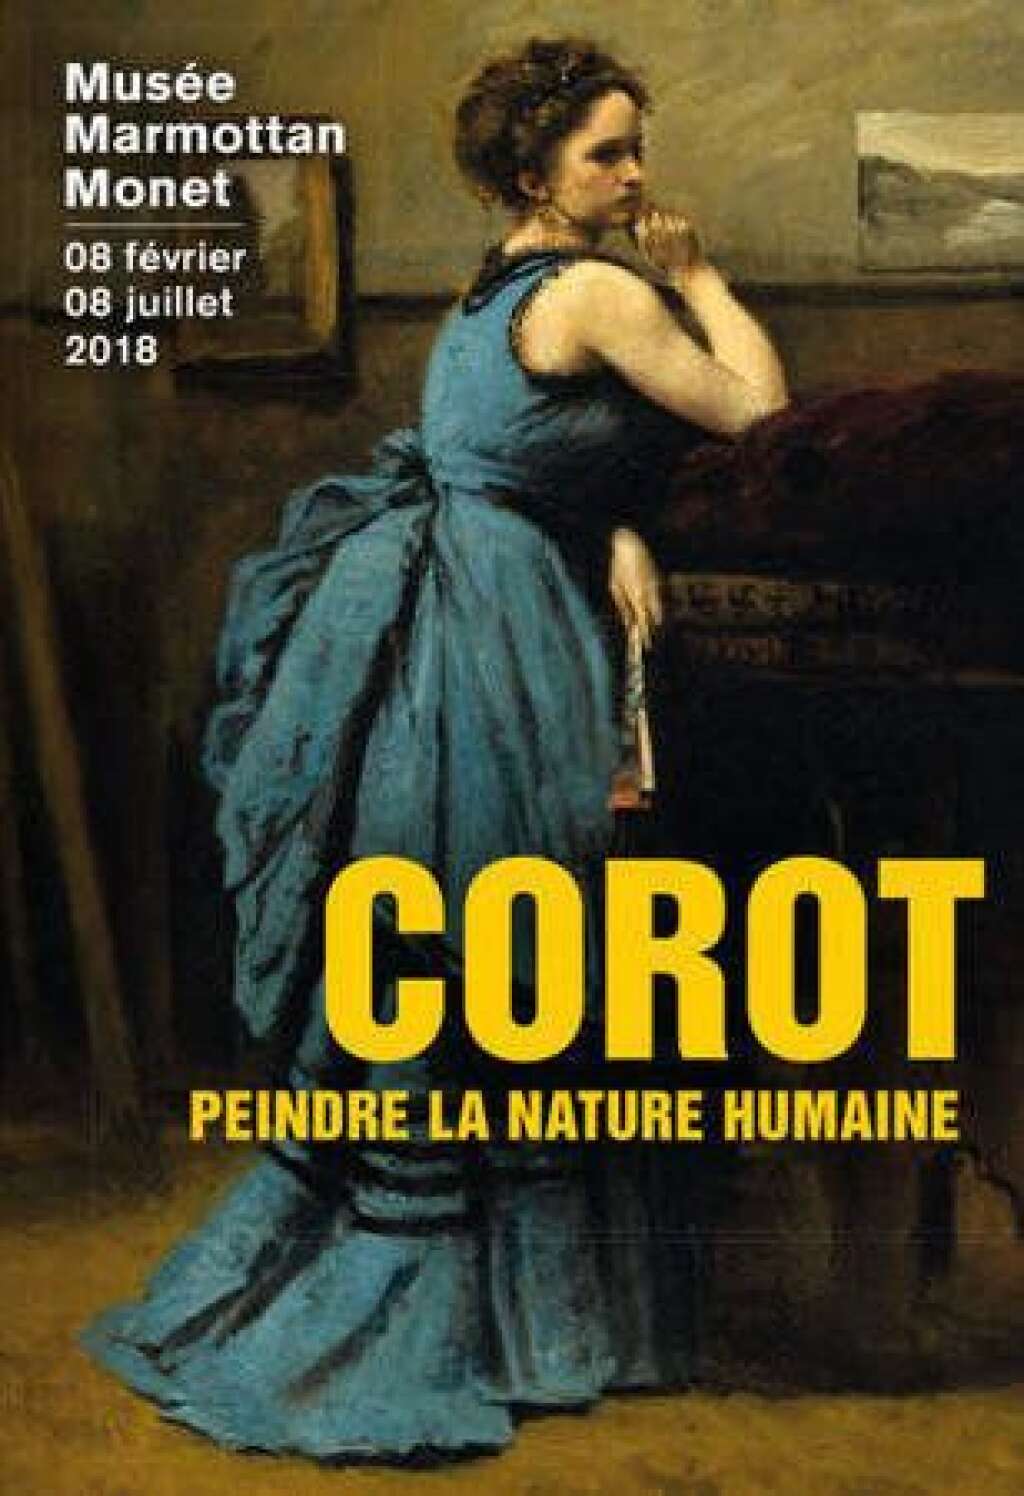 Corot, le peintre et ses modèles - <p><em>Au musée Marmottan Monet à Paris du 8 février au 8 juillet 2017.</em></p>  <p>Depuis 1996, aucune exposition de cette ampleur n'avait été consacrée au peintre parisien. Elle réunit un ensemble exceptionnel de peintures de figures et célèbre la part la plus personnelle, la plus secrète mais aussi la plus moderne de la production de l’artiste.</p>  <p>Vous trouverez une soixantaine de ces figures provenant des plus prestigieuses collections publiques et privées d’Europe et des Etats-Unis.</p>  <p>De grand chefs-d’œuvre sont présentés comme la célèbre "<a href="http://www.louvre.fr/oeuvre-notices/la-femme-la-perle">Femme à la perle</a>", "La Dame en bleu" du Louvre ou l’impressionnante Italienne de Londres, autrefois dans la collection du peintre Lucian Freud, mais aussi des œuvres, tout aussi éblouissantes, mais rarement vues, comme certains de ses nus.</p>  <p></p>